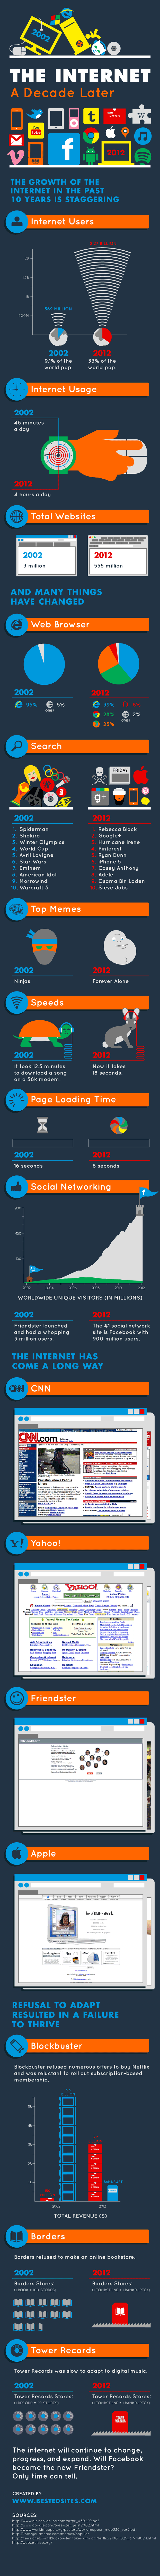 La evolución de Internet en la última década 1